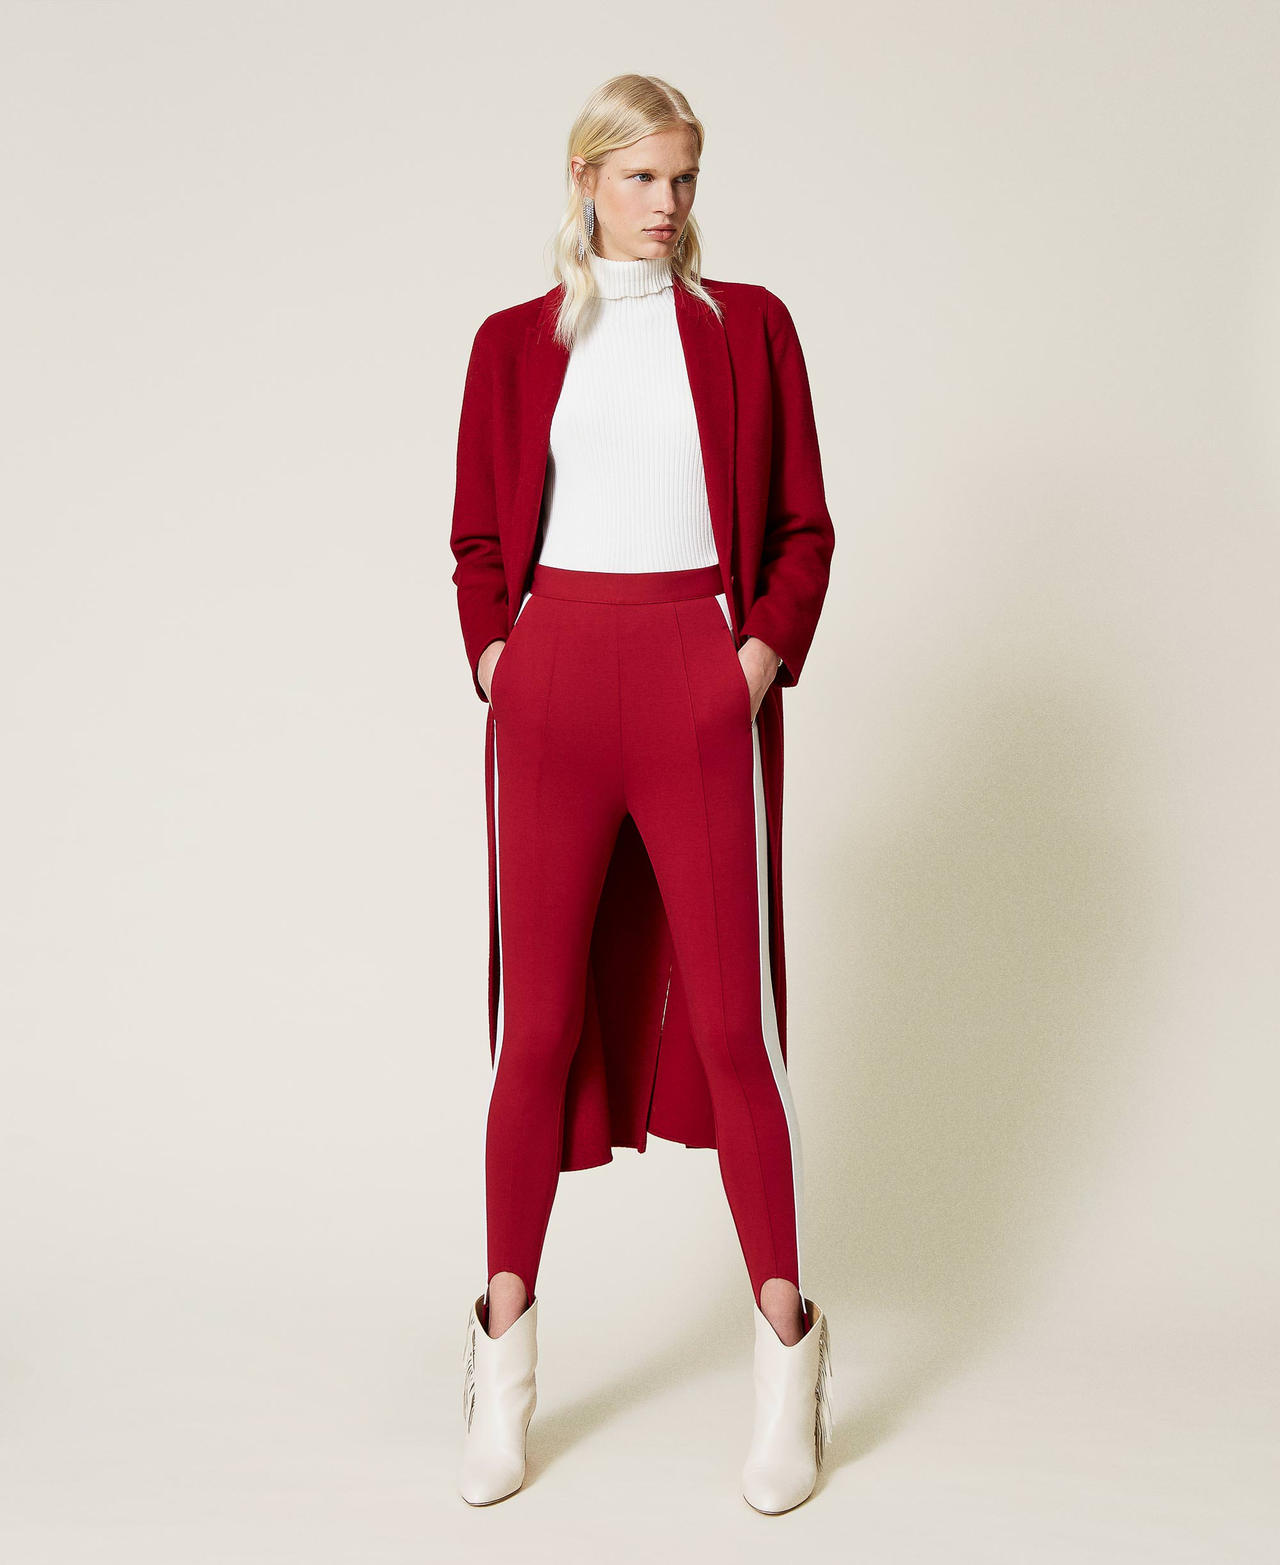 Legging bicolore avec étriers Bicolore Rouge Framboise Foncé / Blanc « Neige » Femme 212TP2163-02